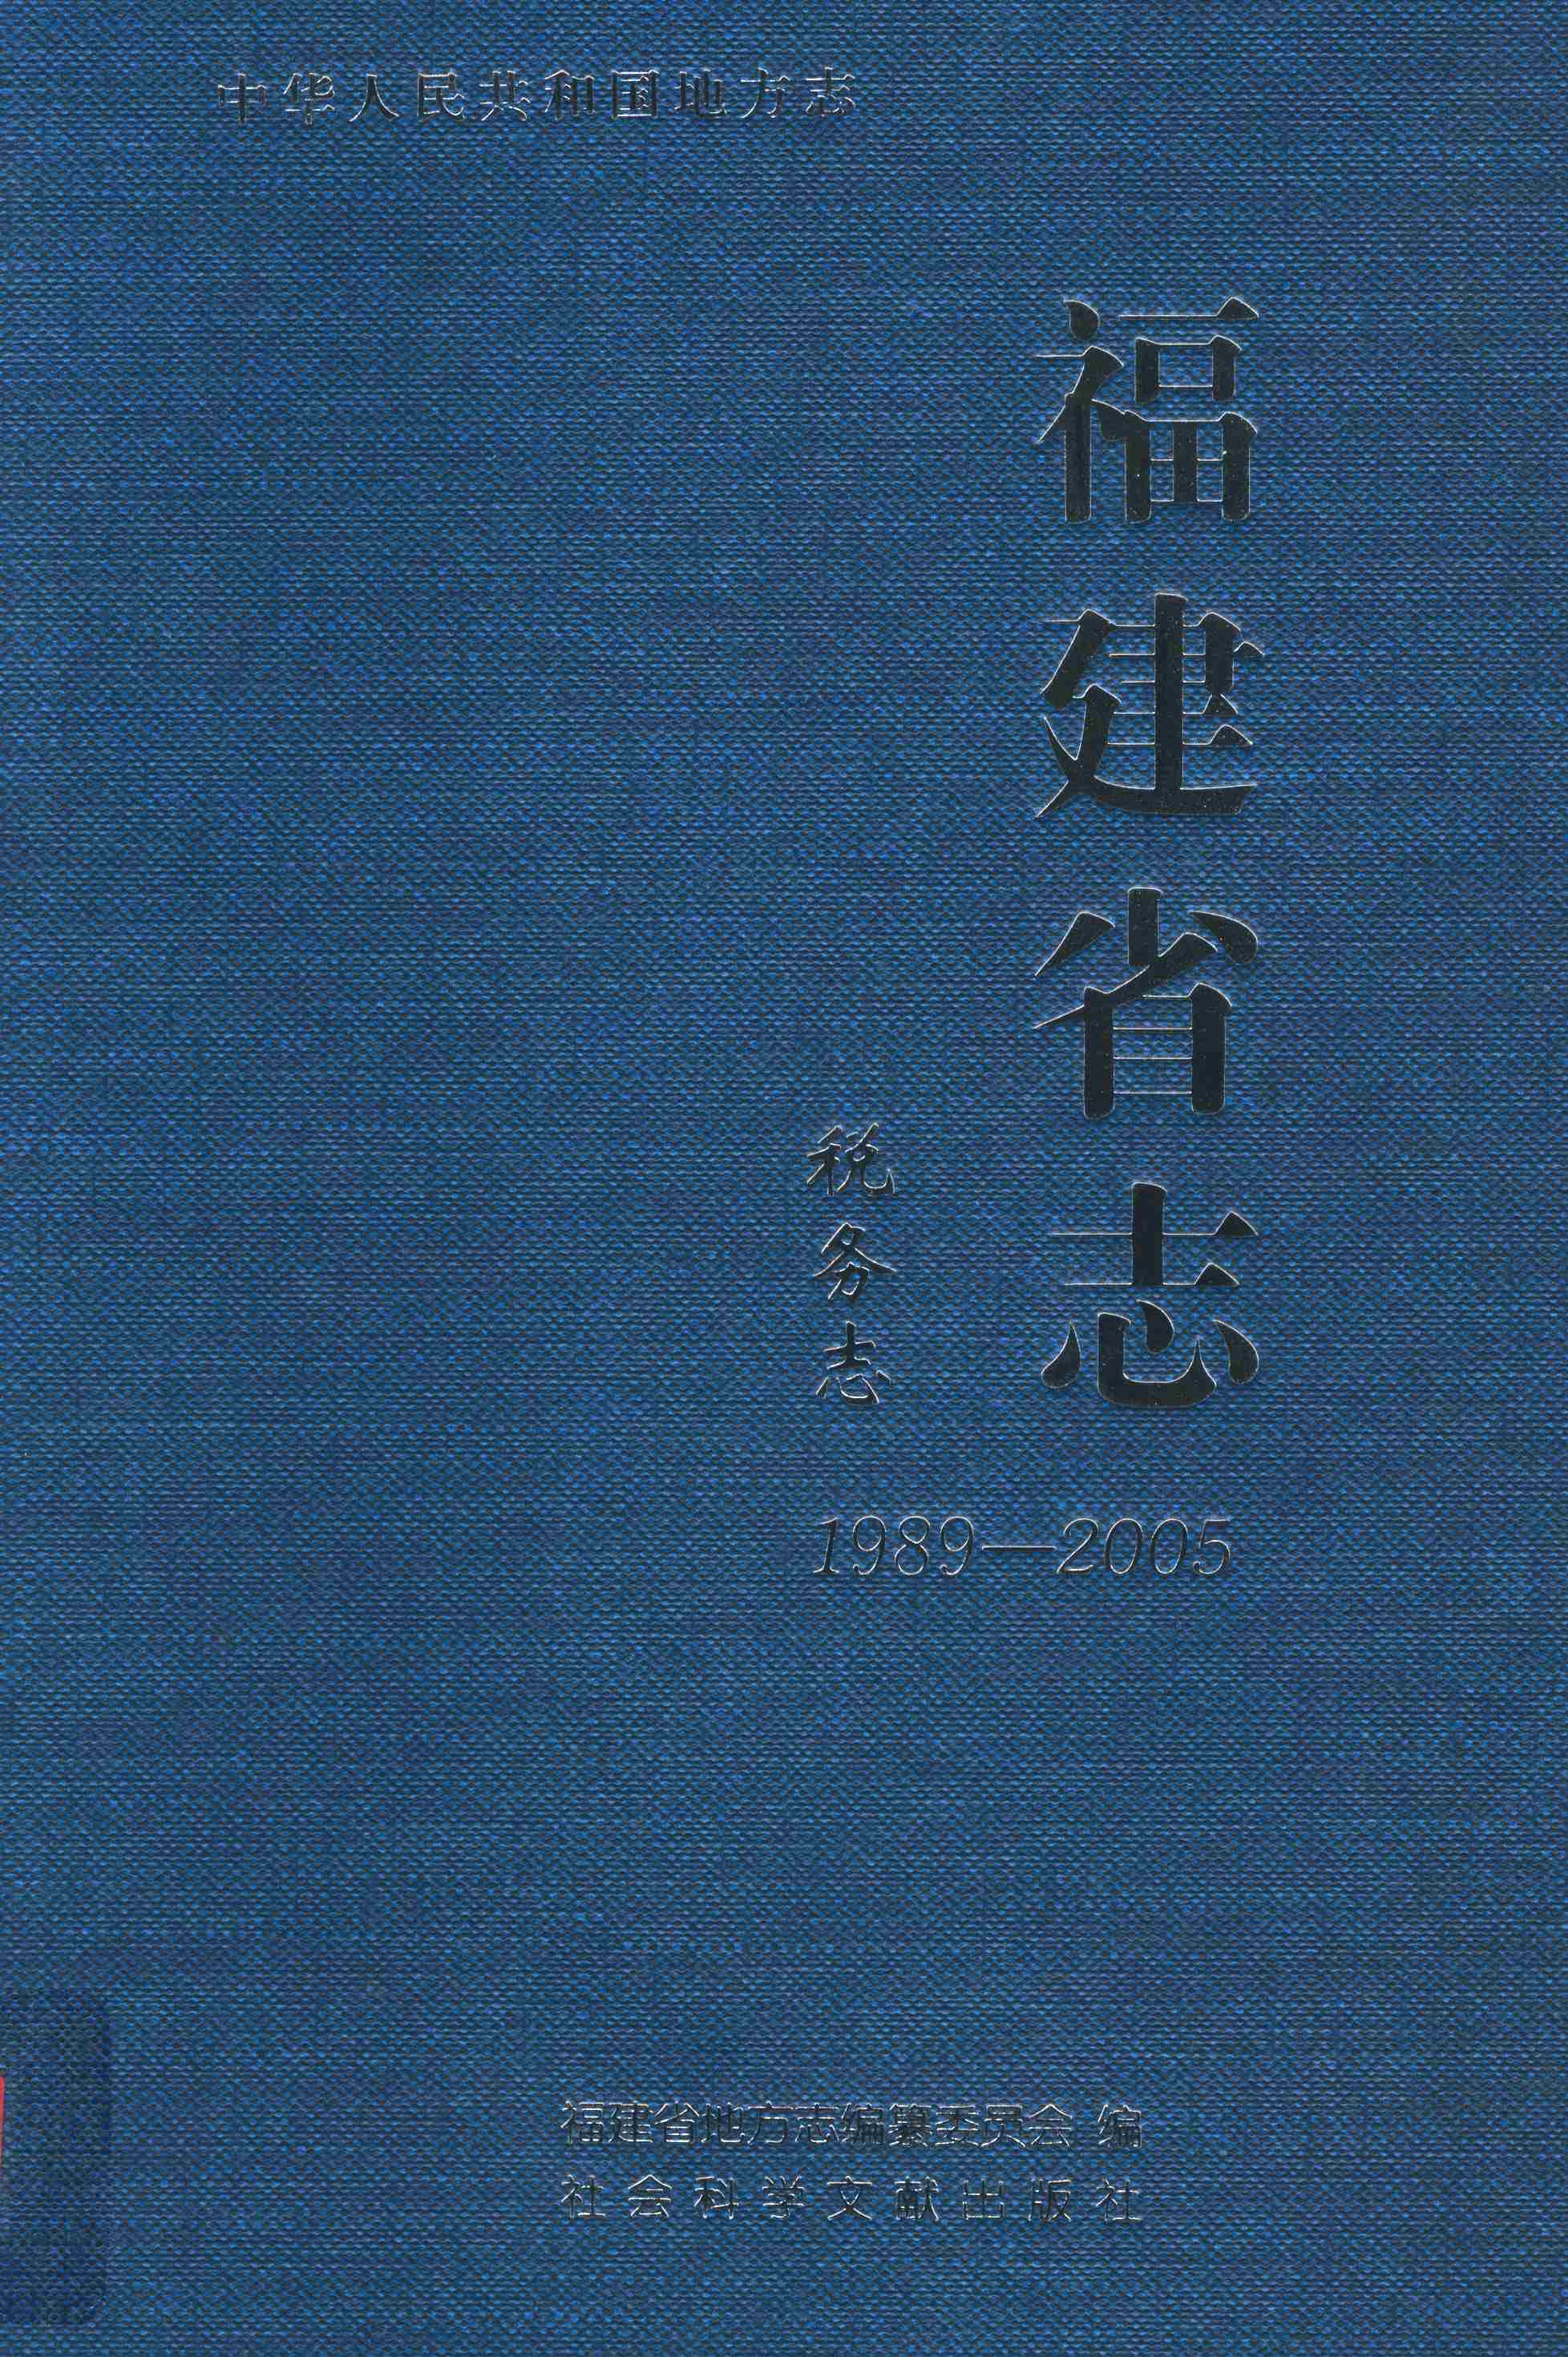 福建省志·税务志1989-2005